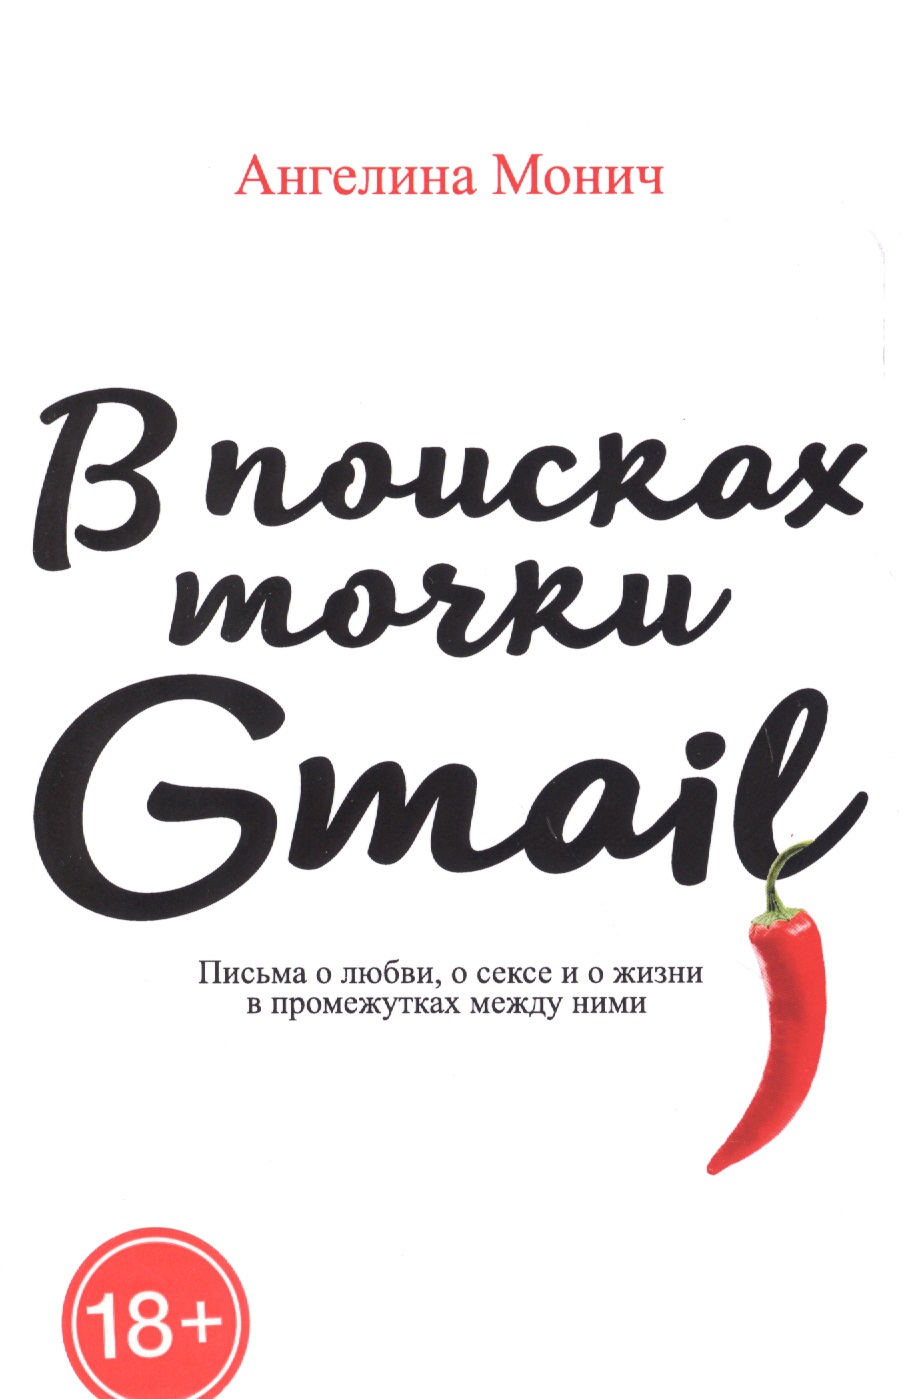 В поисках точки Gmail: письма о любви, о сексе и жизни в промежутках между ними